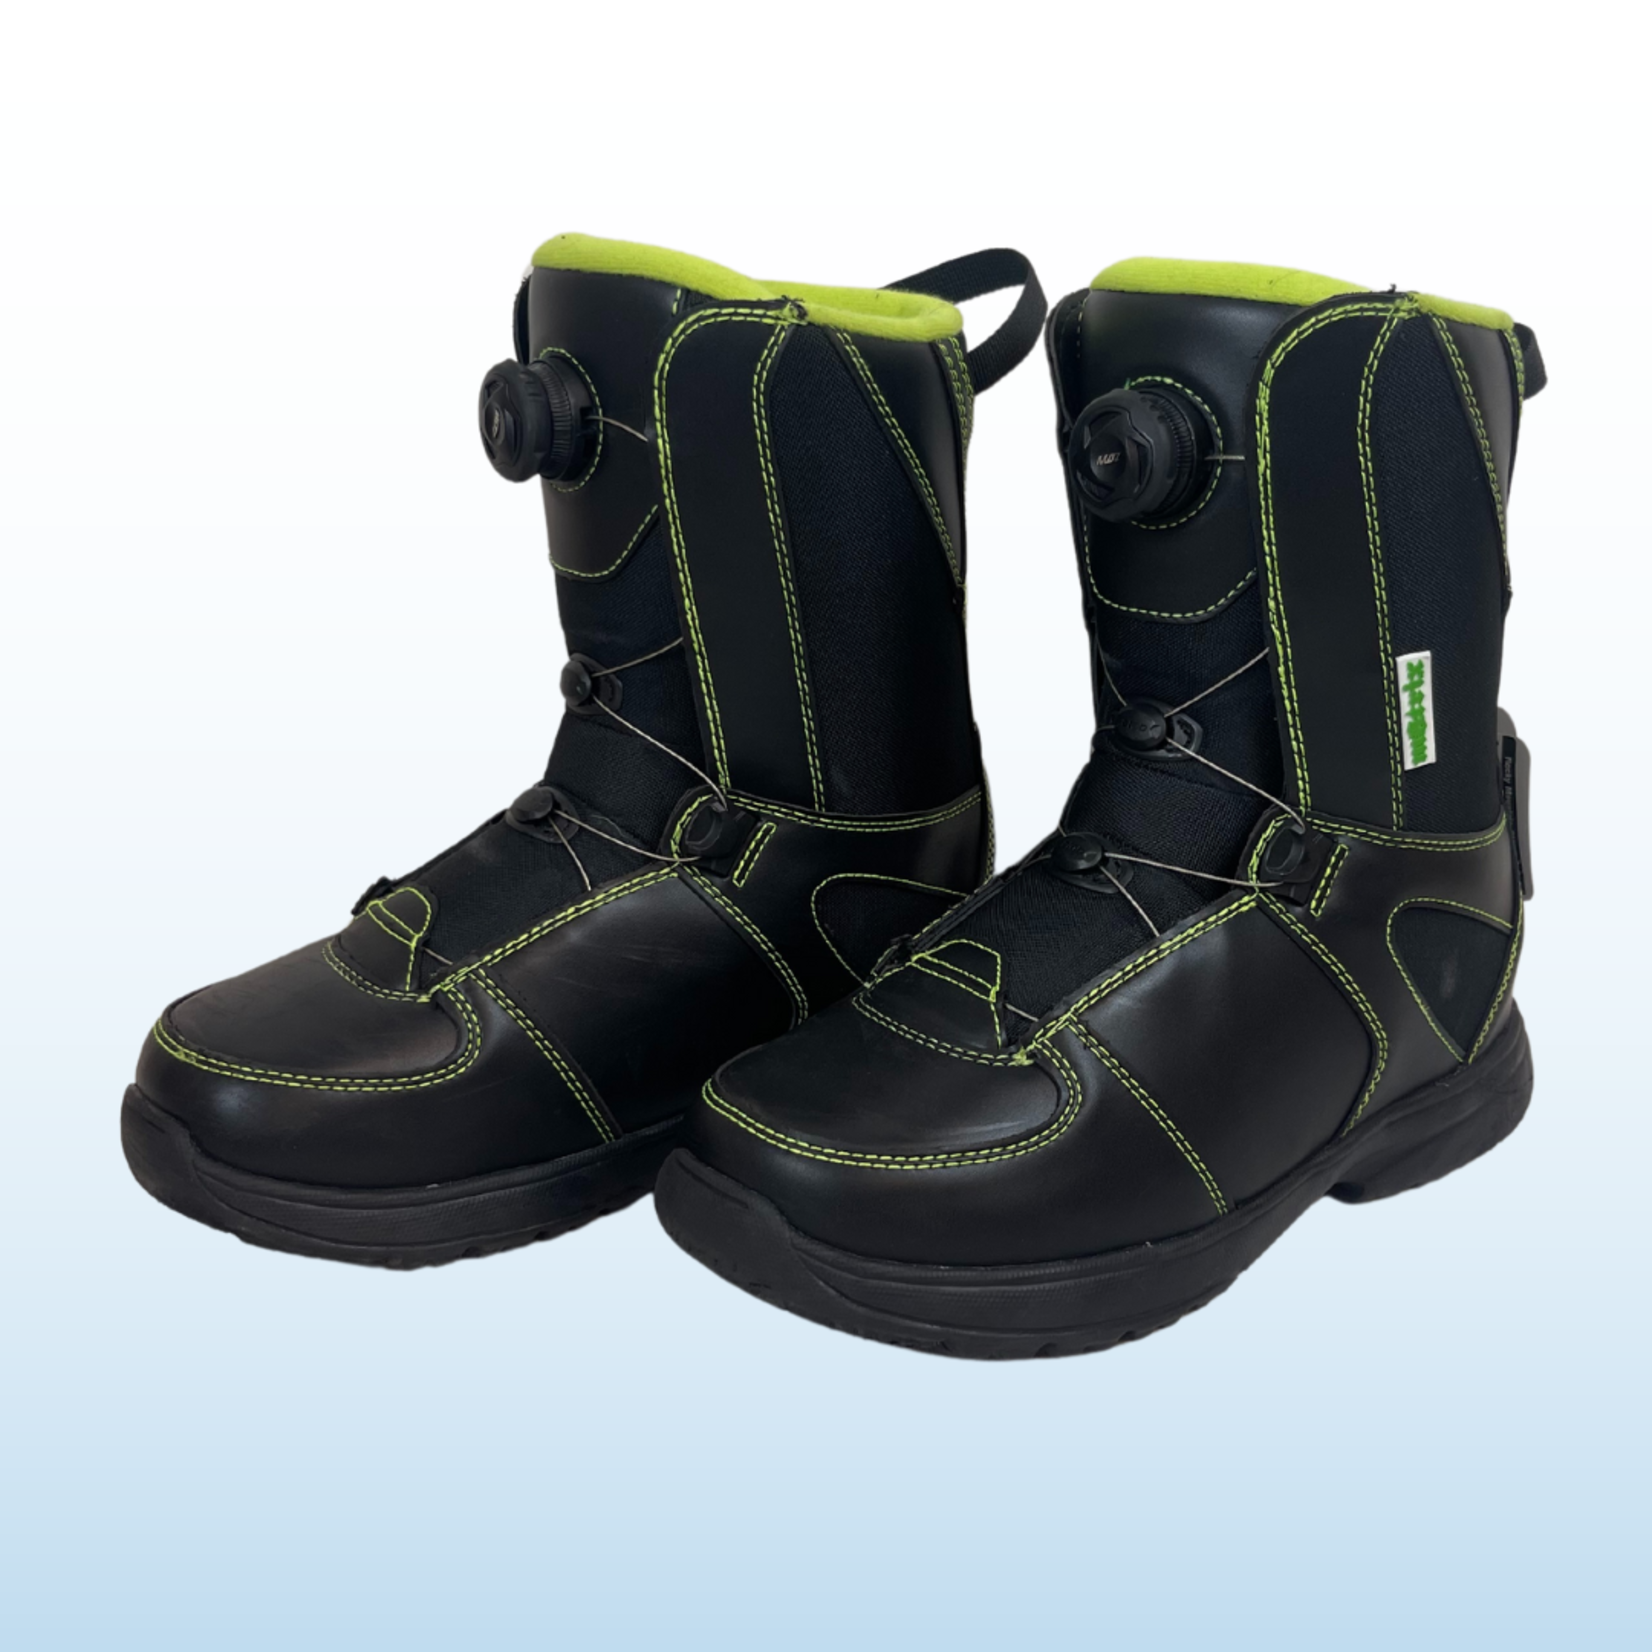 Matrix Used Matrix Snowboard Boots